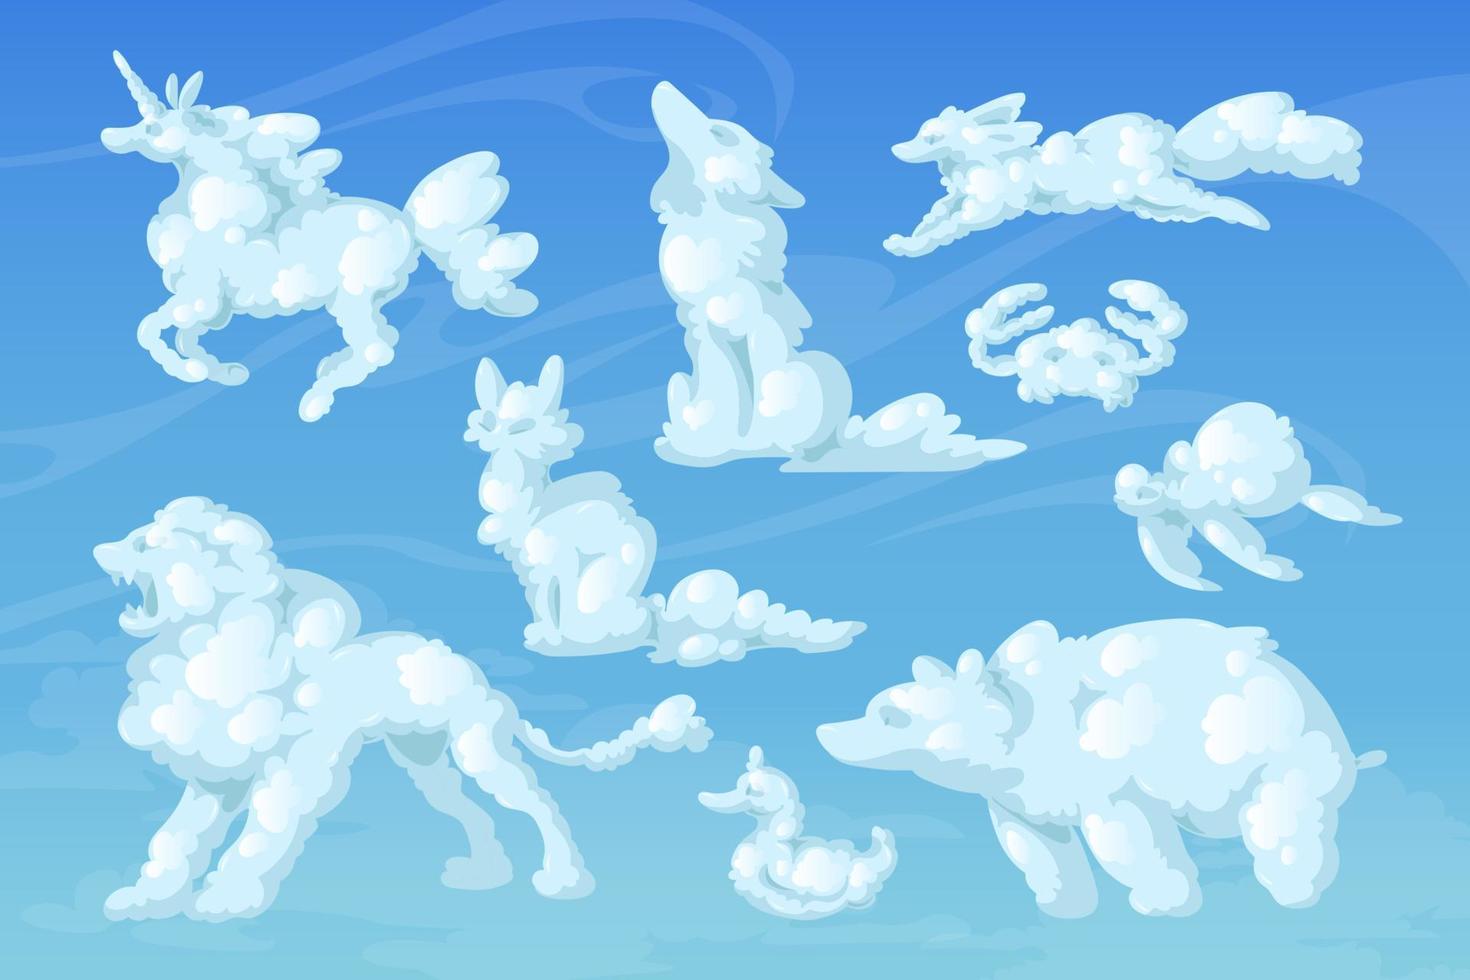 animais de nuvem, redemoinhos fofos de desenho animado no céu azul vetor